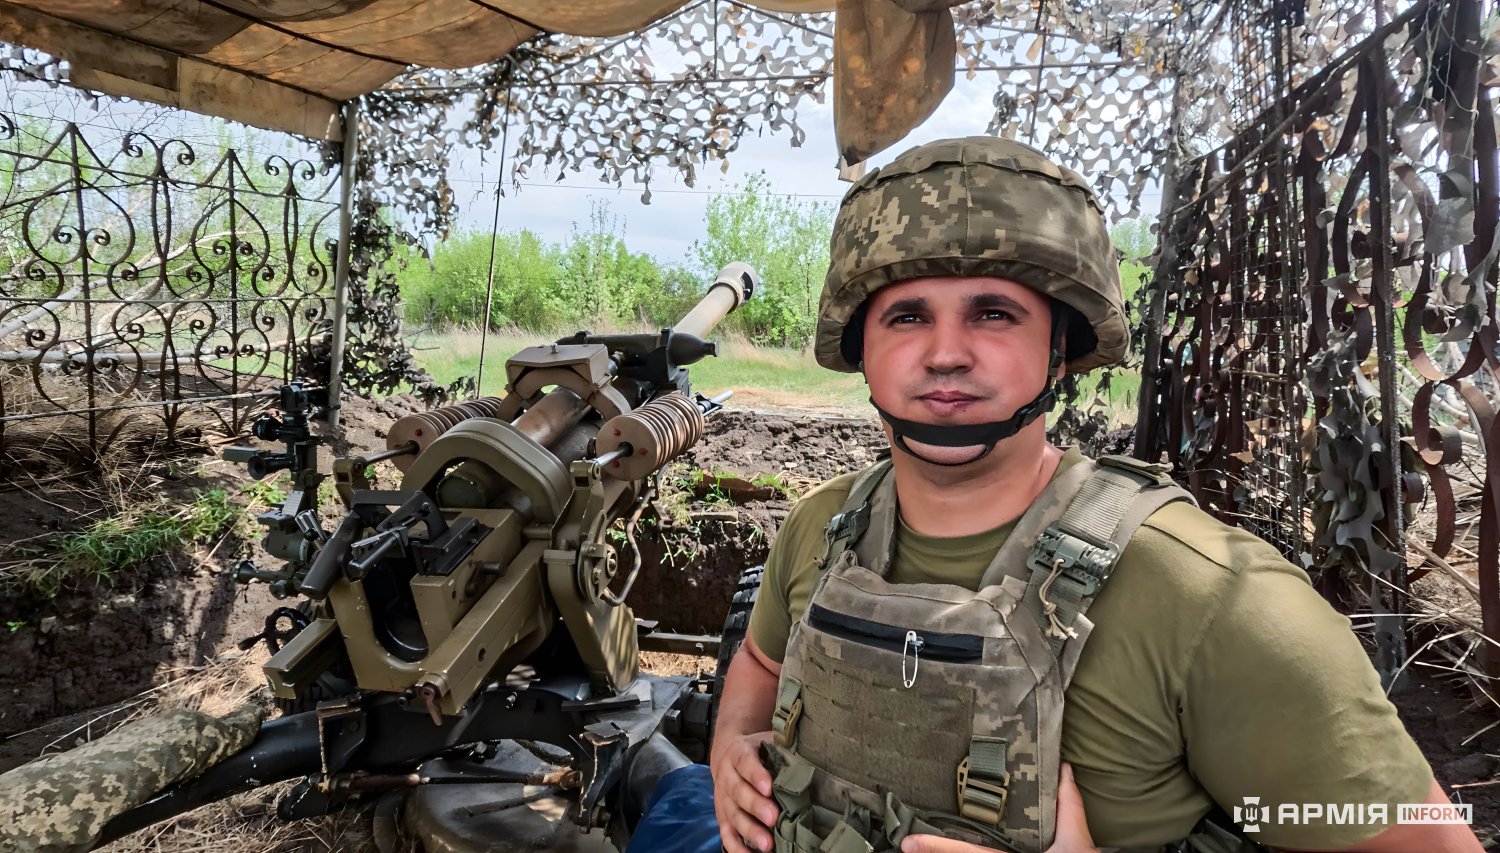 صور الجيش الاوكراني في الحرب الروسية-الاوكرانية.........متجدد GMbcd8VW4AA22Ht?format=jpg&name=large